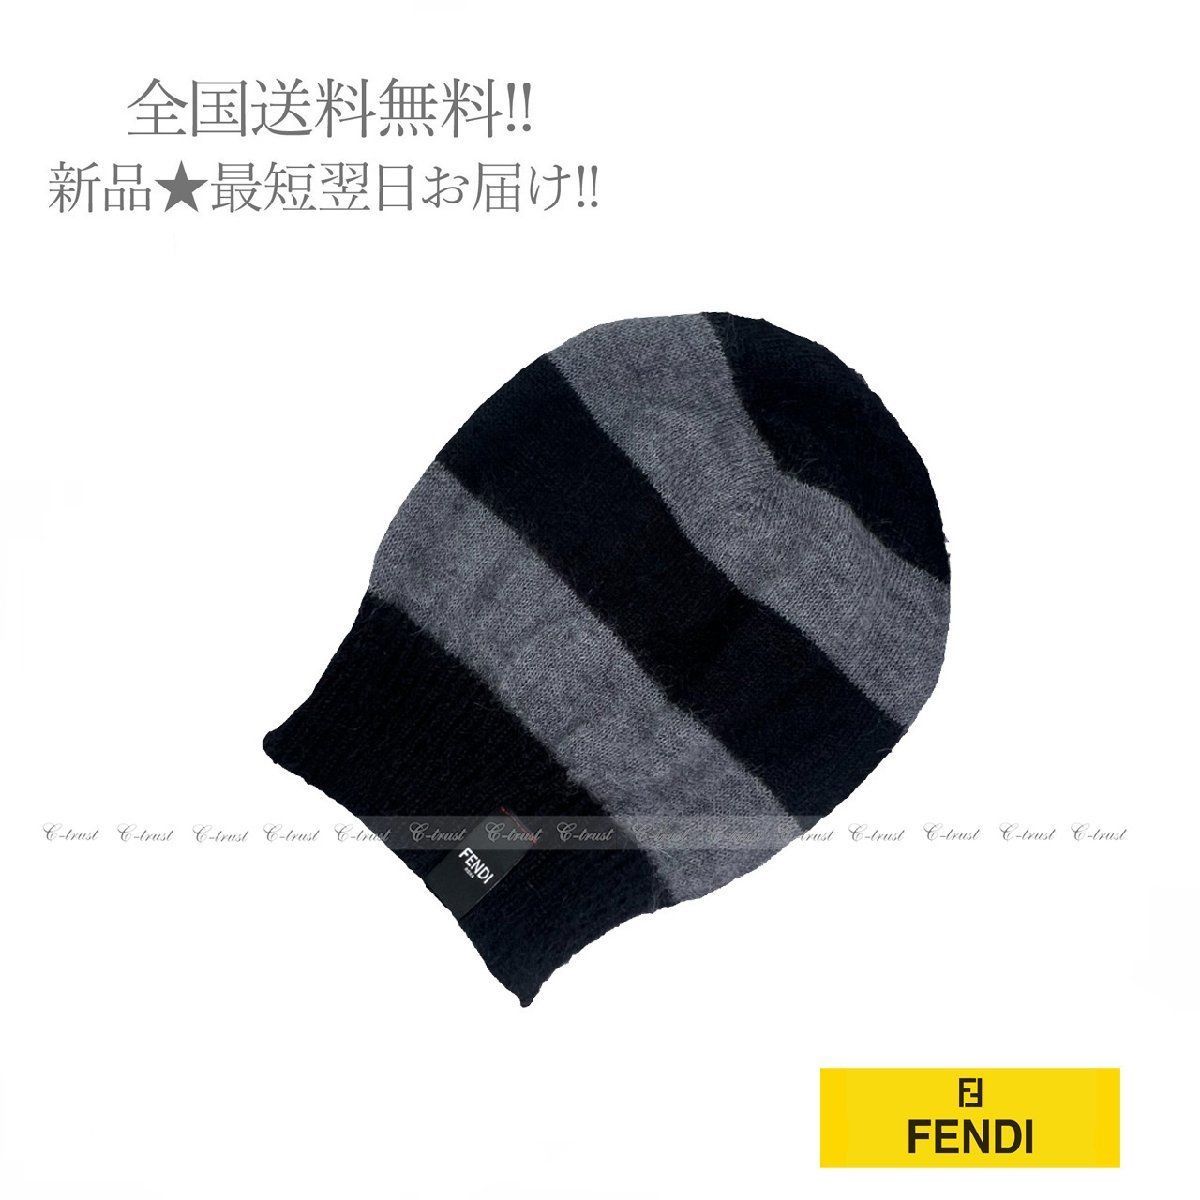 公式の店舗 FENDI フェンディ ニット キャップ ニット帽 帽子 ロゴ ボーダー ハット モヘヤ×シルク イタリア製 ☆ ブラック × グレー  J635.. 27412円 帽子